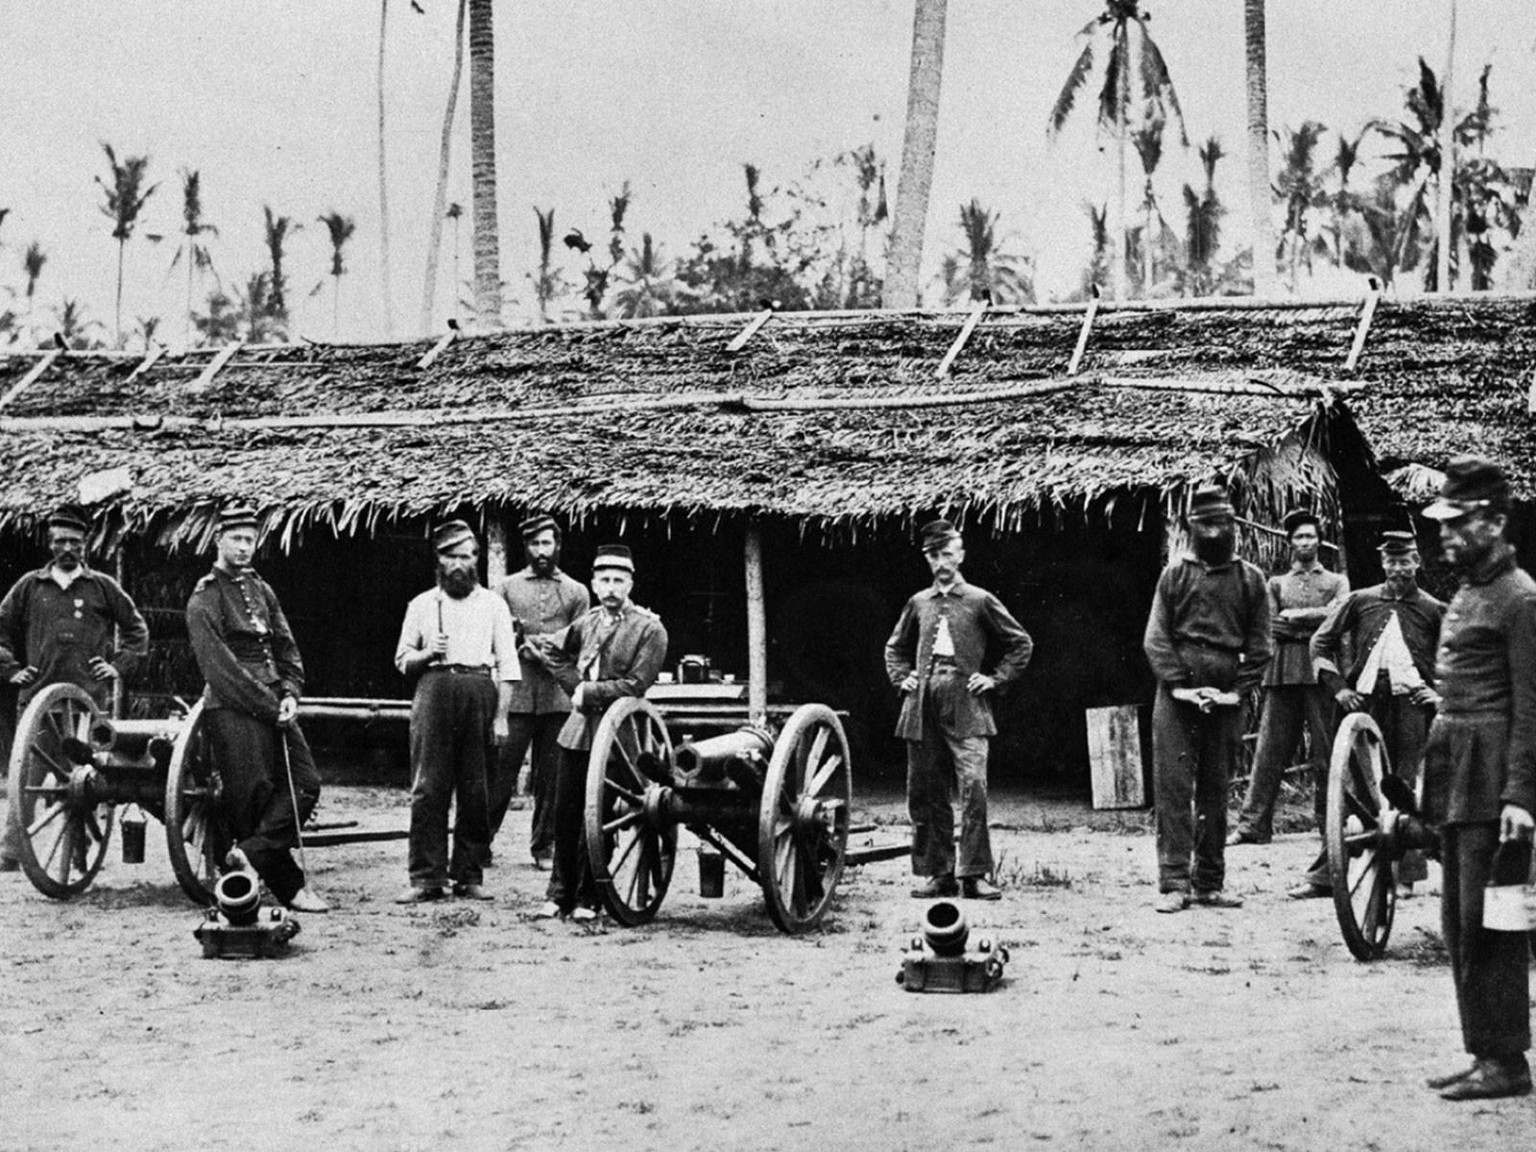 Soldaten der niederländischen Kolonialarmee während des Acehkrieges (1873-1912) im Nordosten Sumatras, an dem auch viele Schweizer beteiligt waren.
https://commons.wikimedia.org/wiki/File:COLLECTIE_TR ...